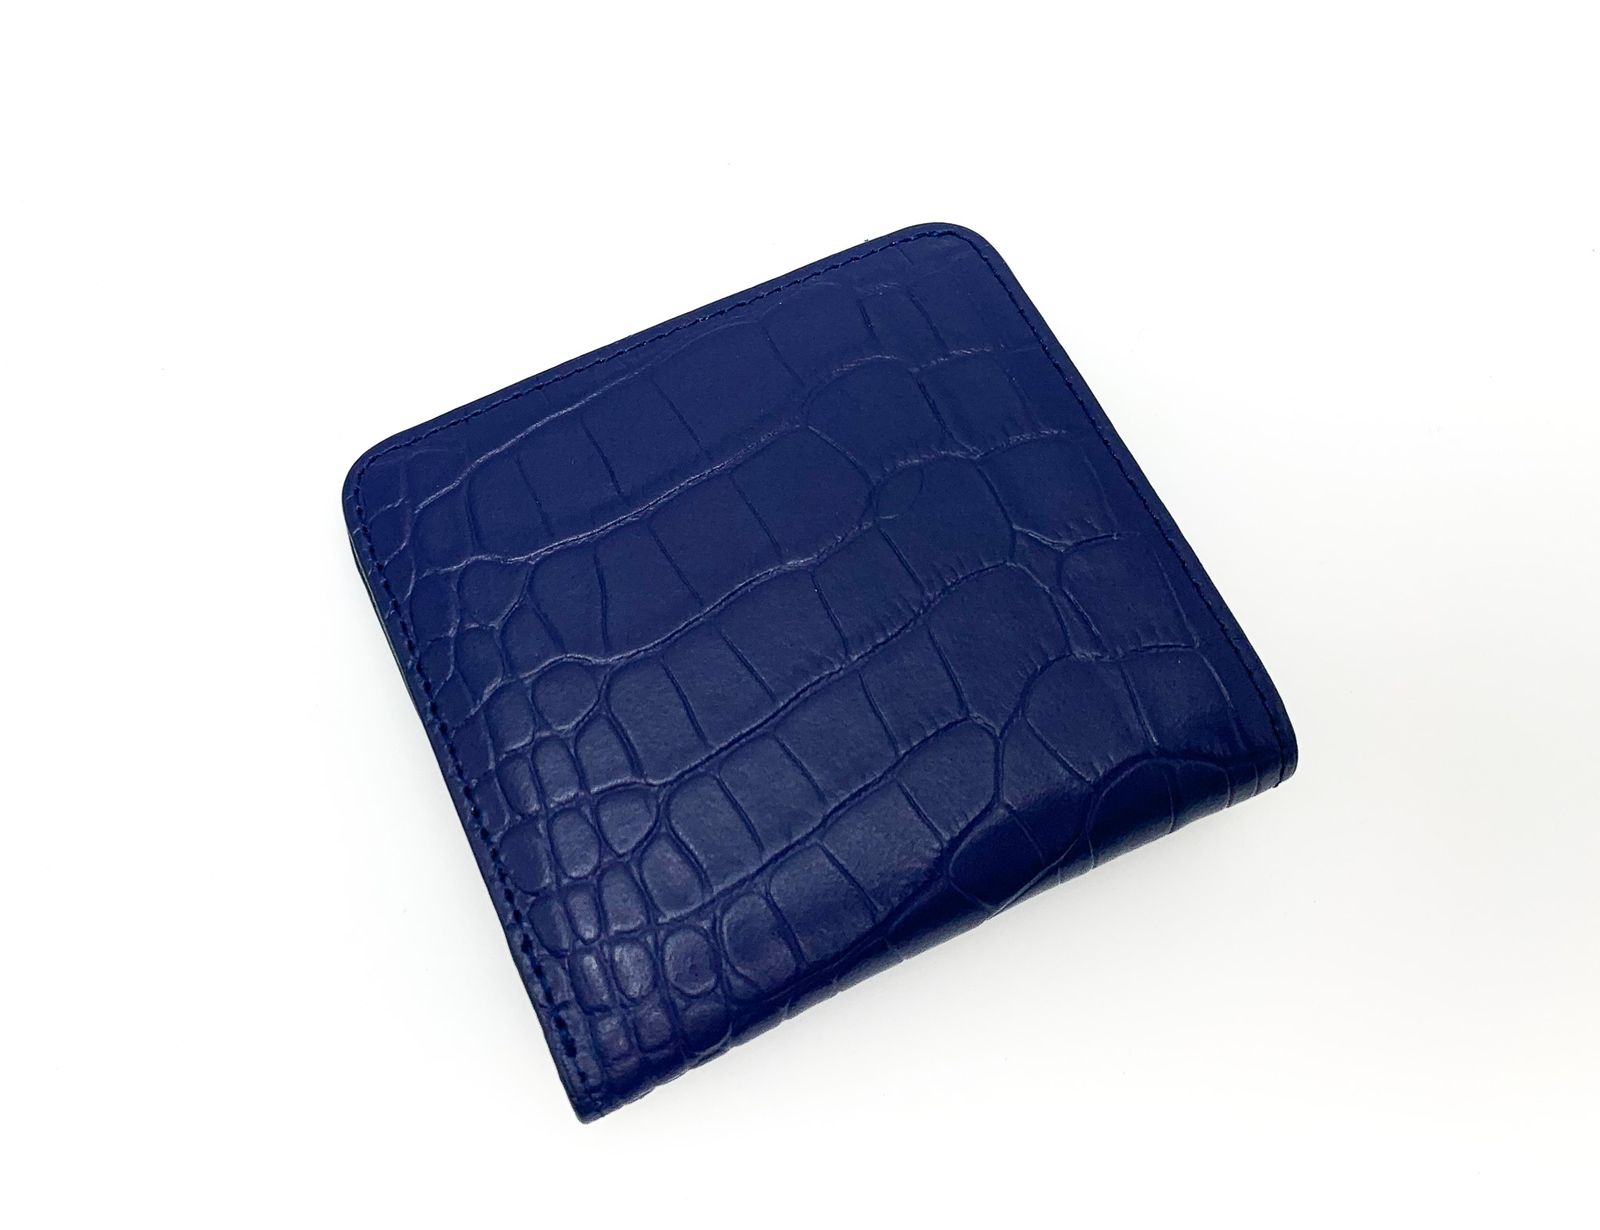 RODANIA ロダニア クロコダイル ネイビー コンパクトサイフ 財布 アイリッシュブルー 青系 ブルー系